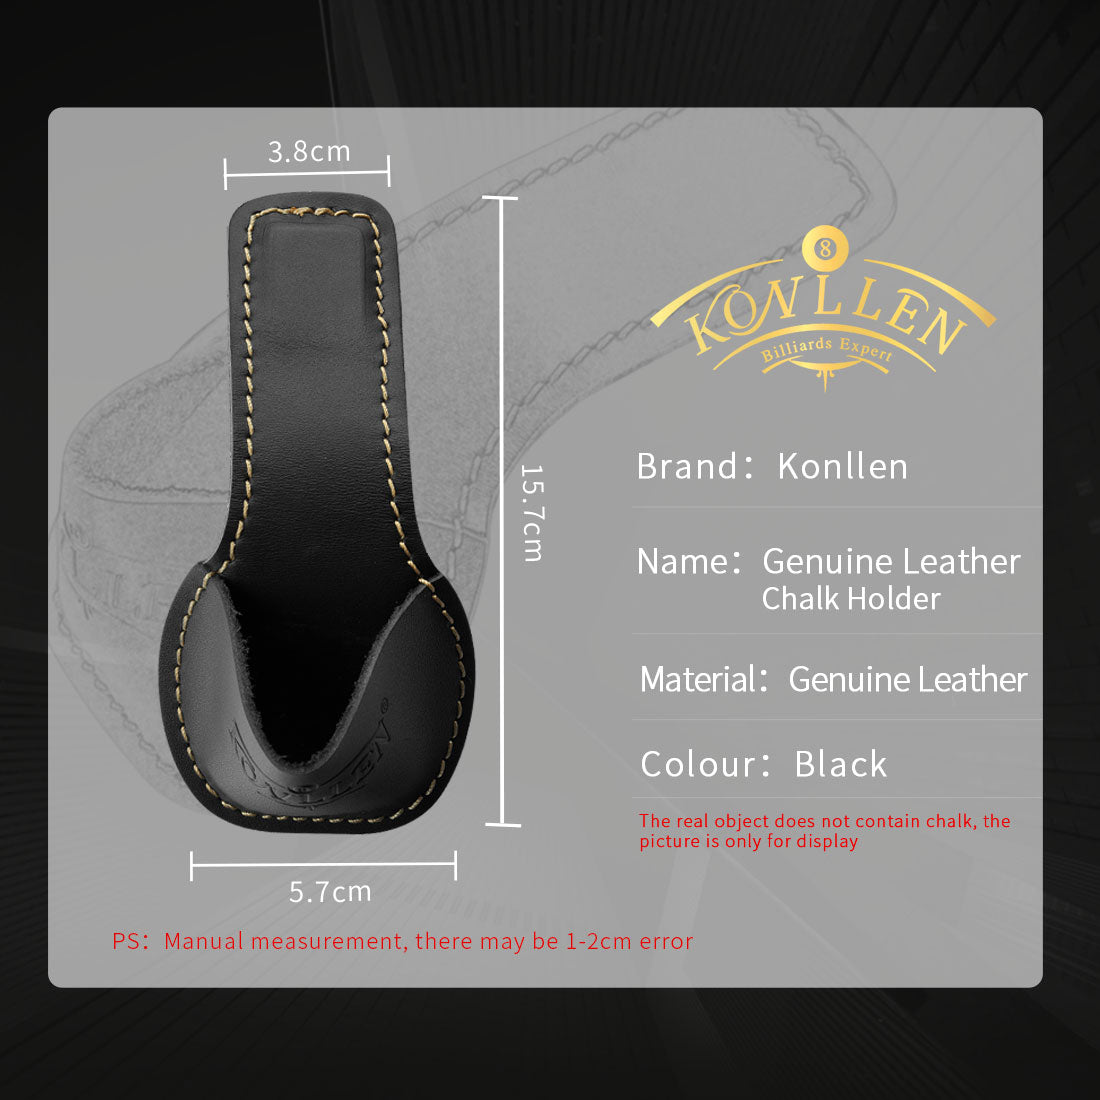 Leather Chalk Bag – KONLLEN billiards